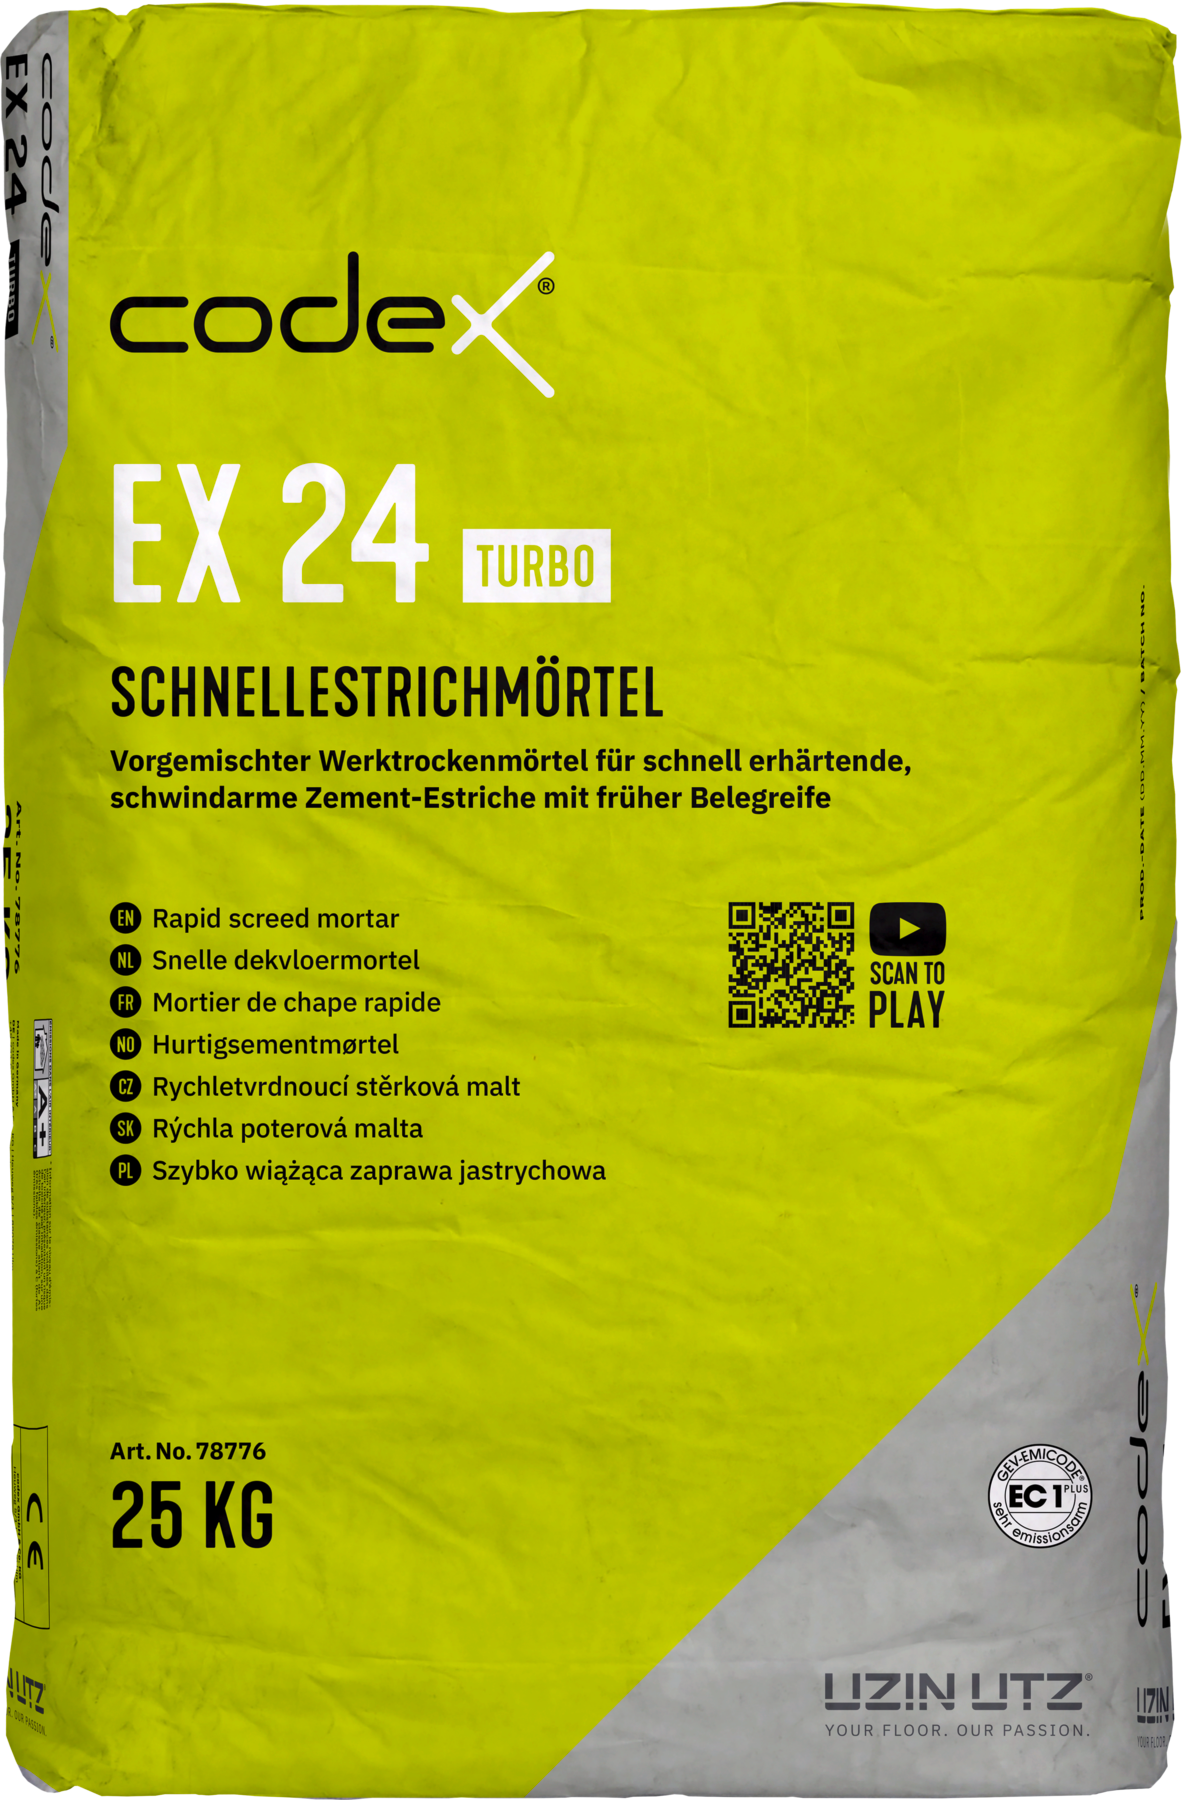 Codex EX 24 Turbo 25 kg Schnellestrichmörtel